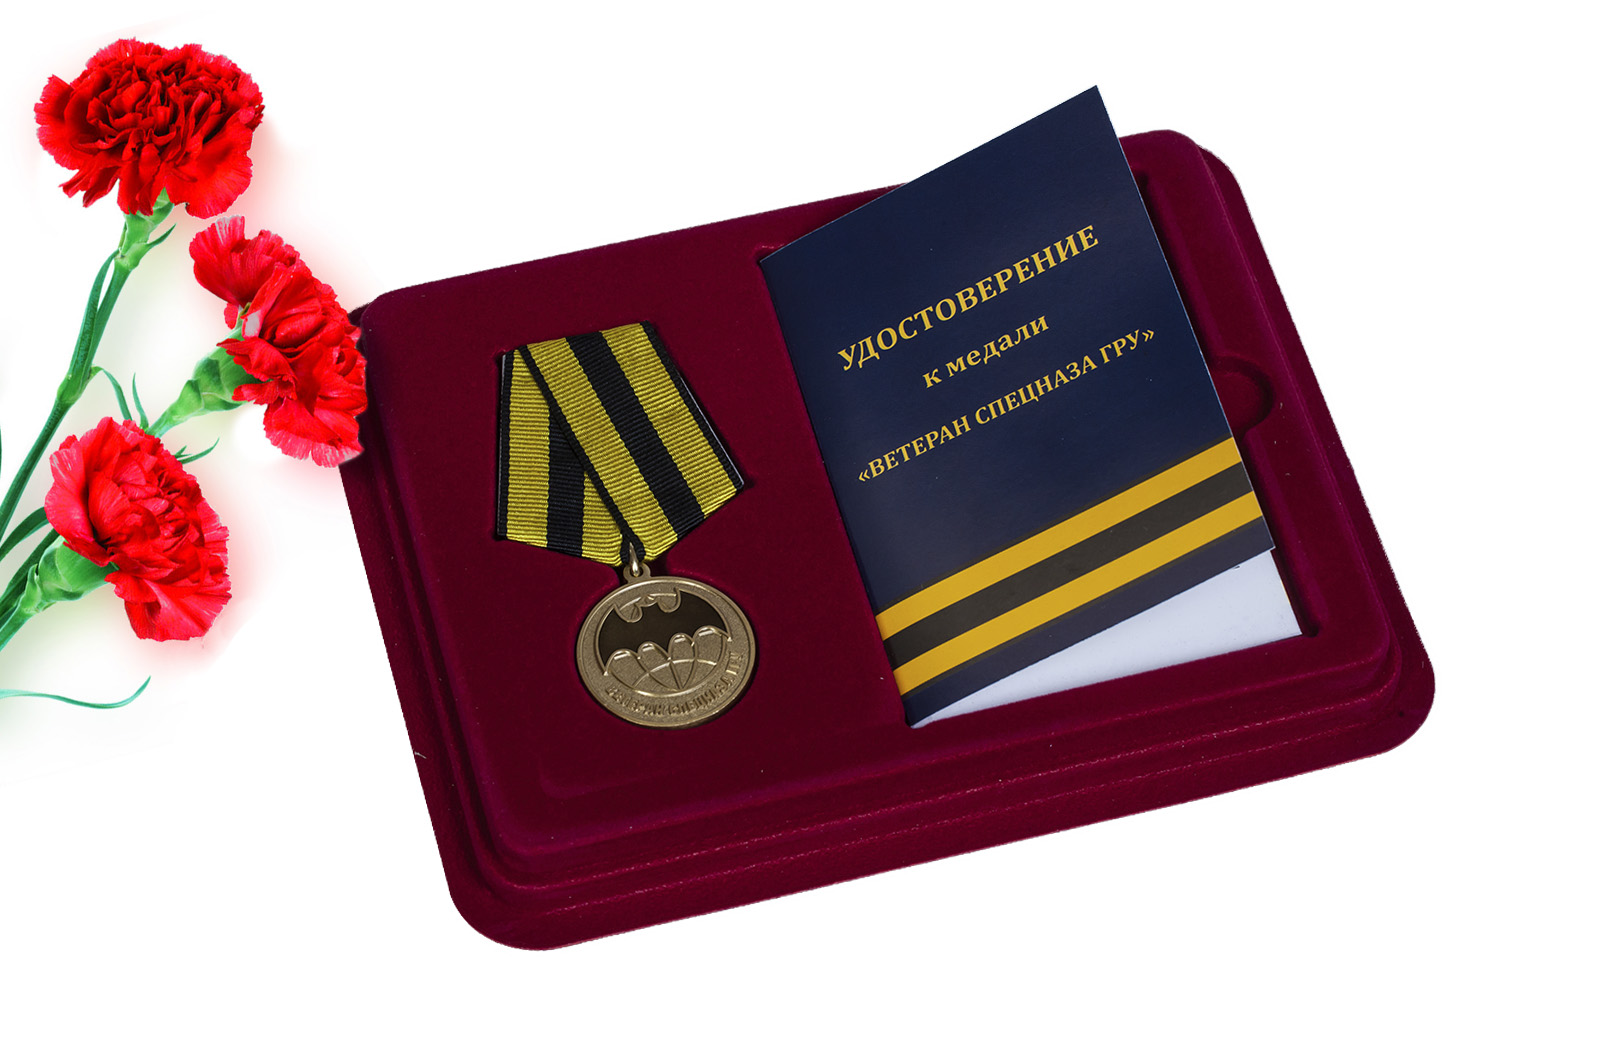 Купить медаль Ветеран Спецназа ГРУ в футляре с удостоверением оптом или в розницу